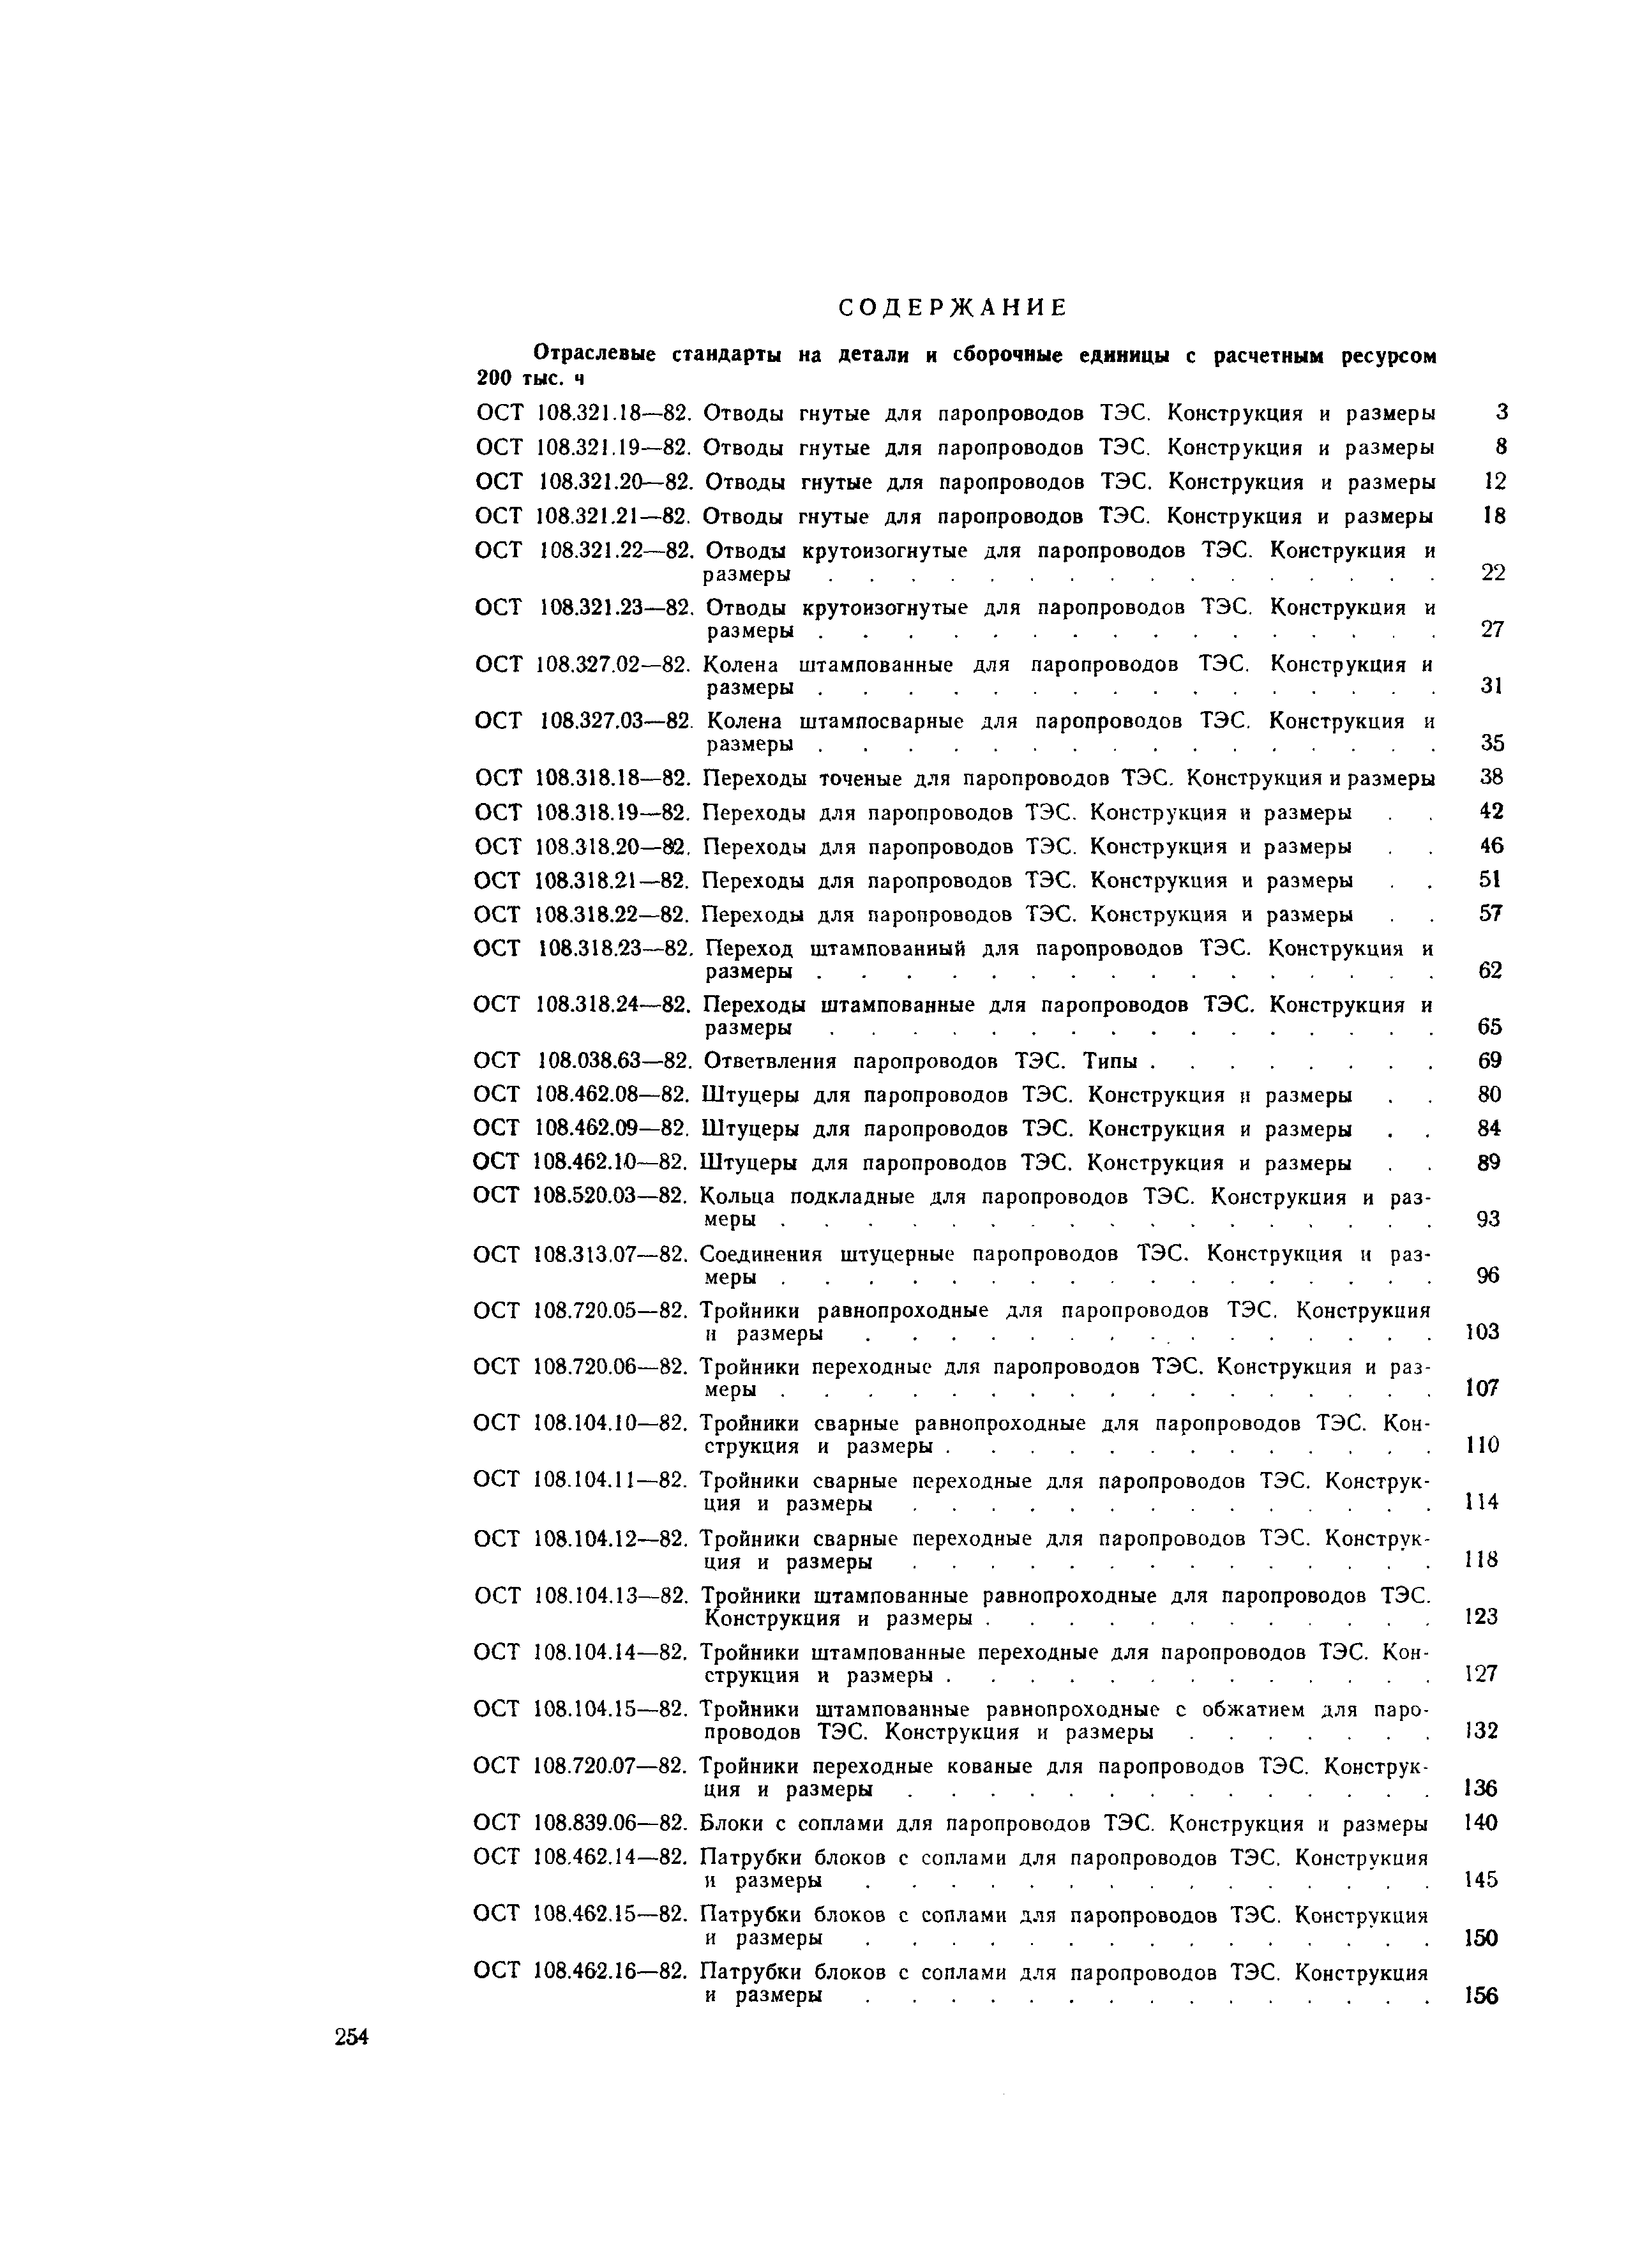 ОСТ 108.318.19-82